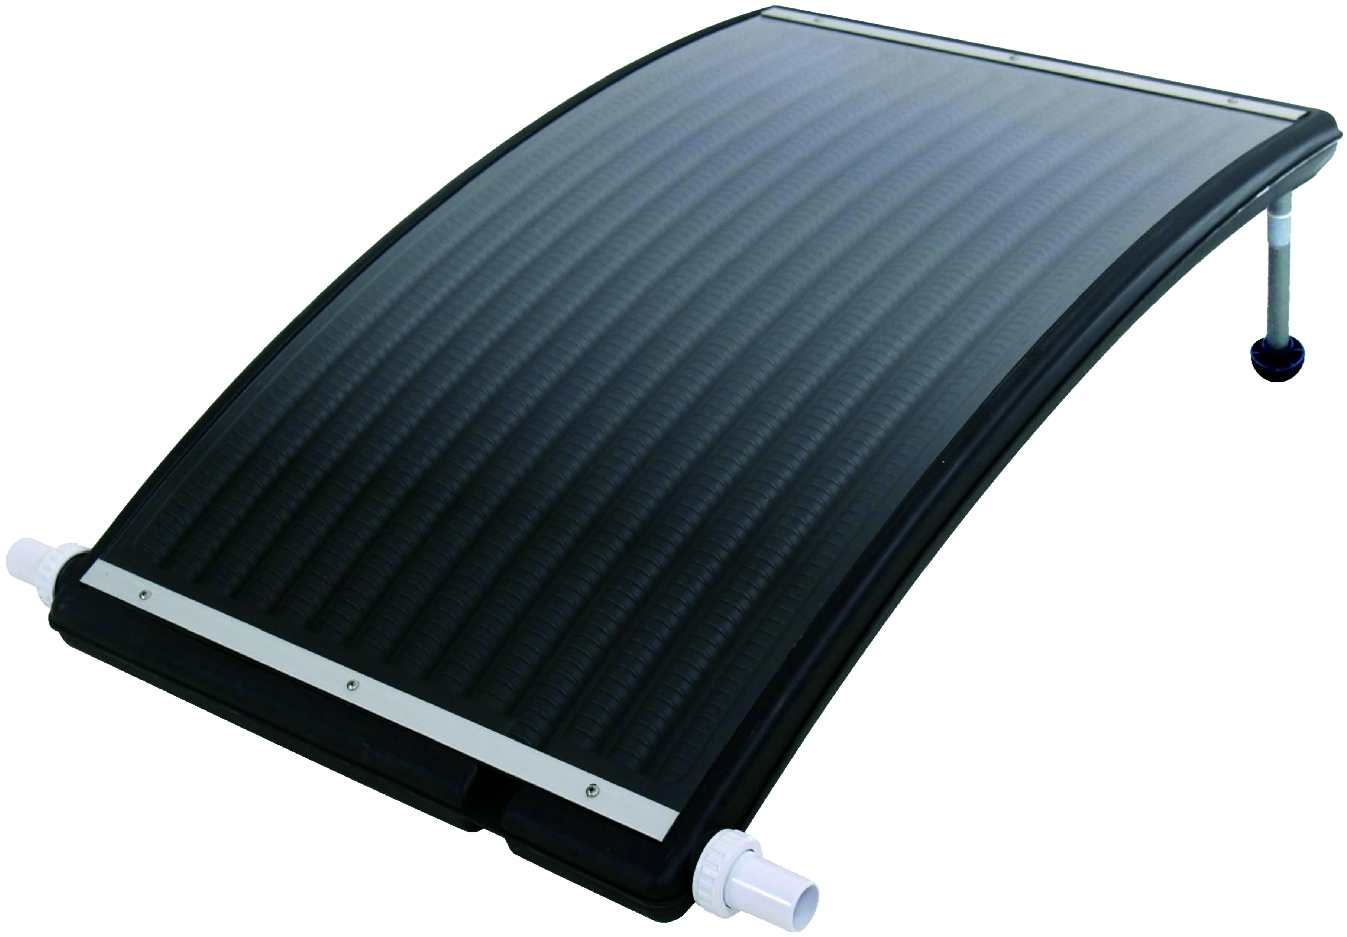 MARIMEX Marimex ohřev solární Slim 3000